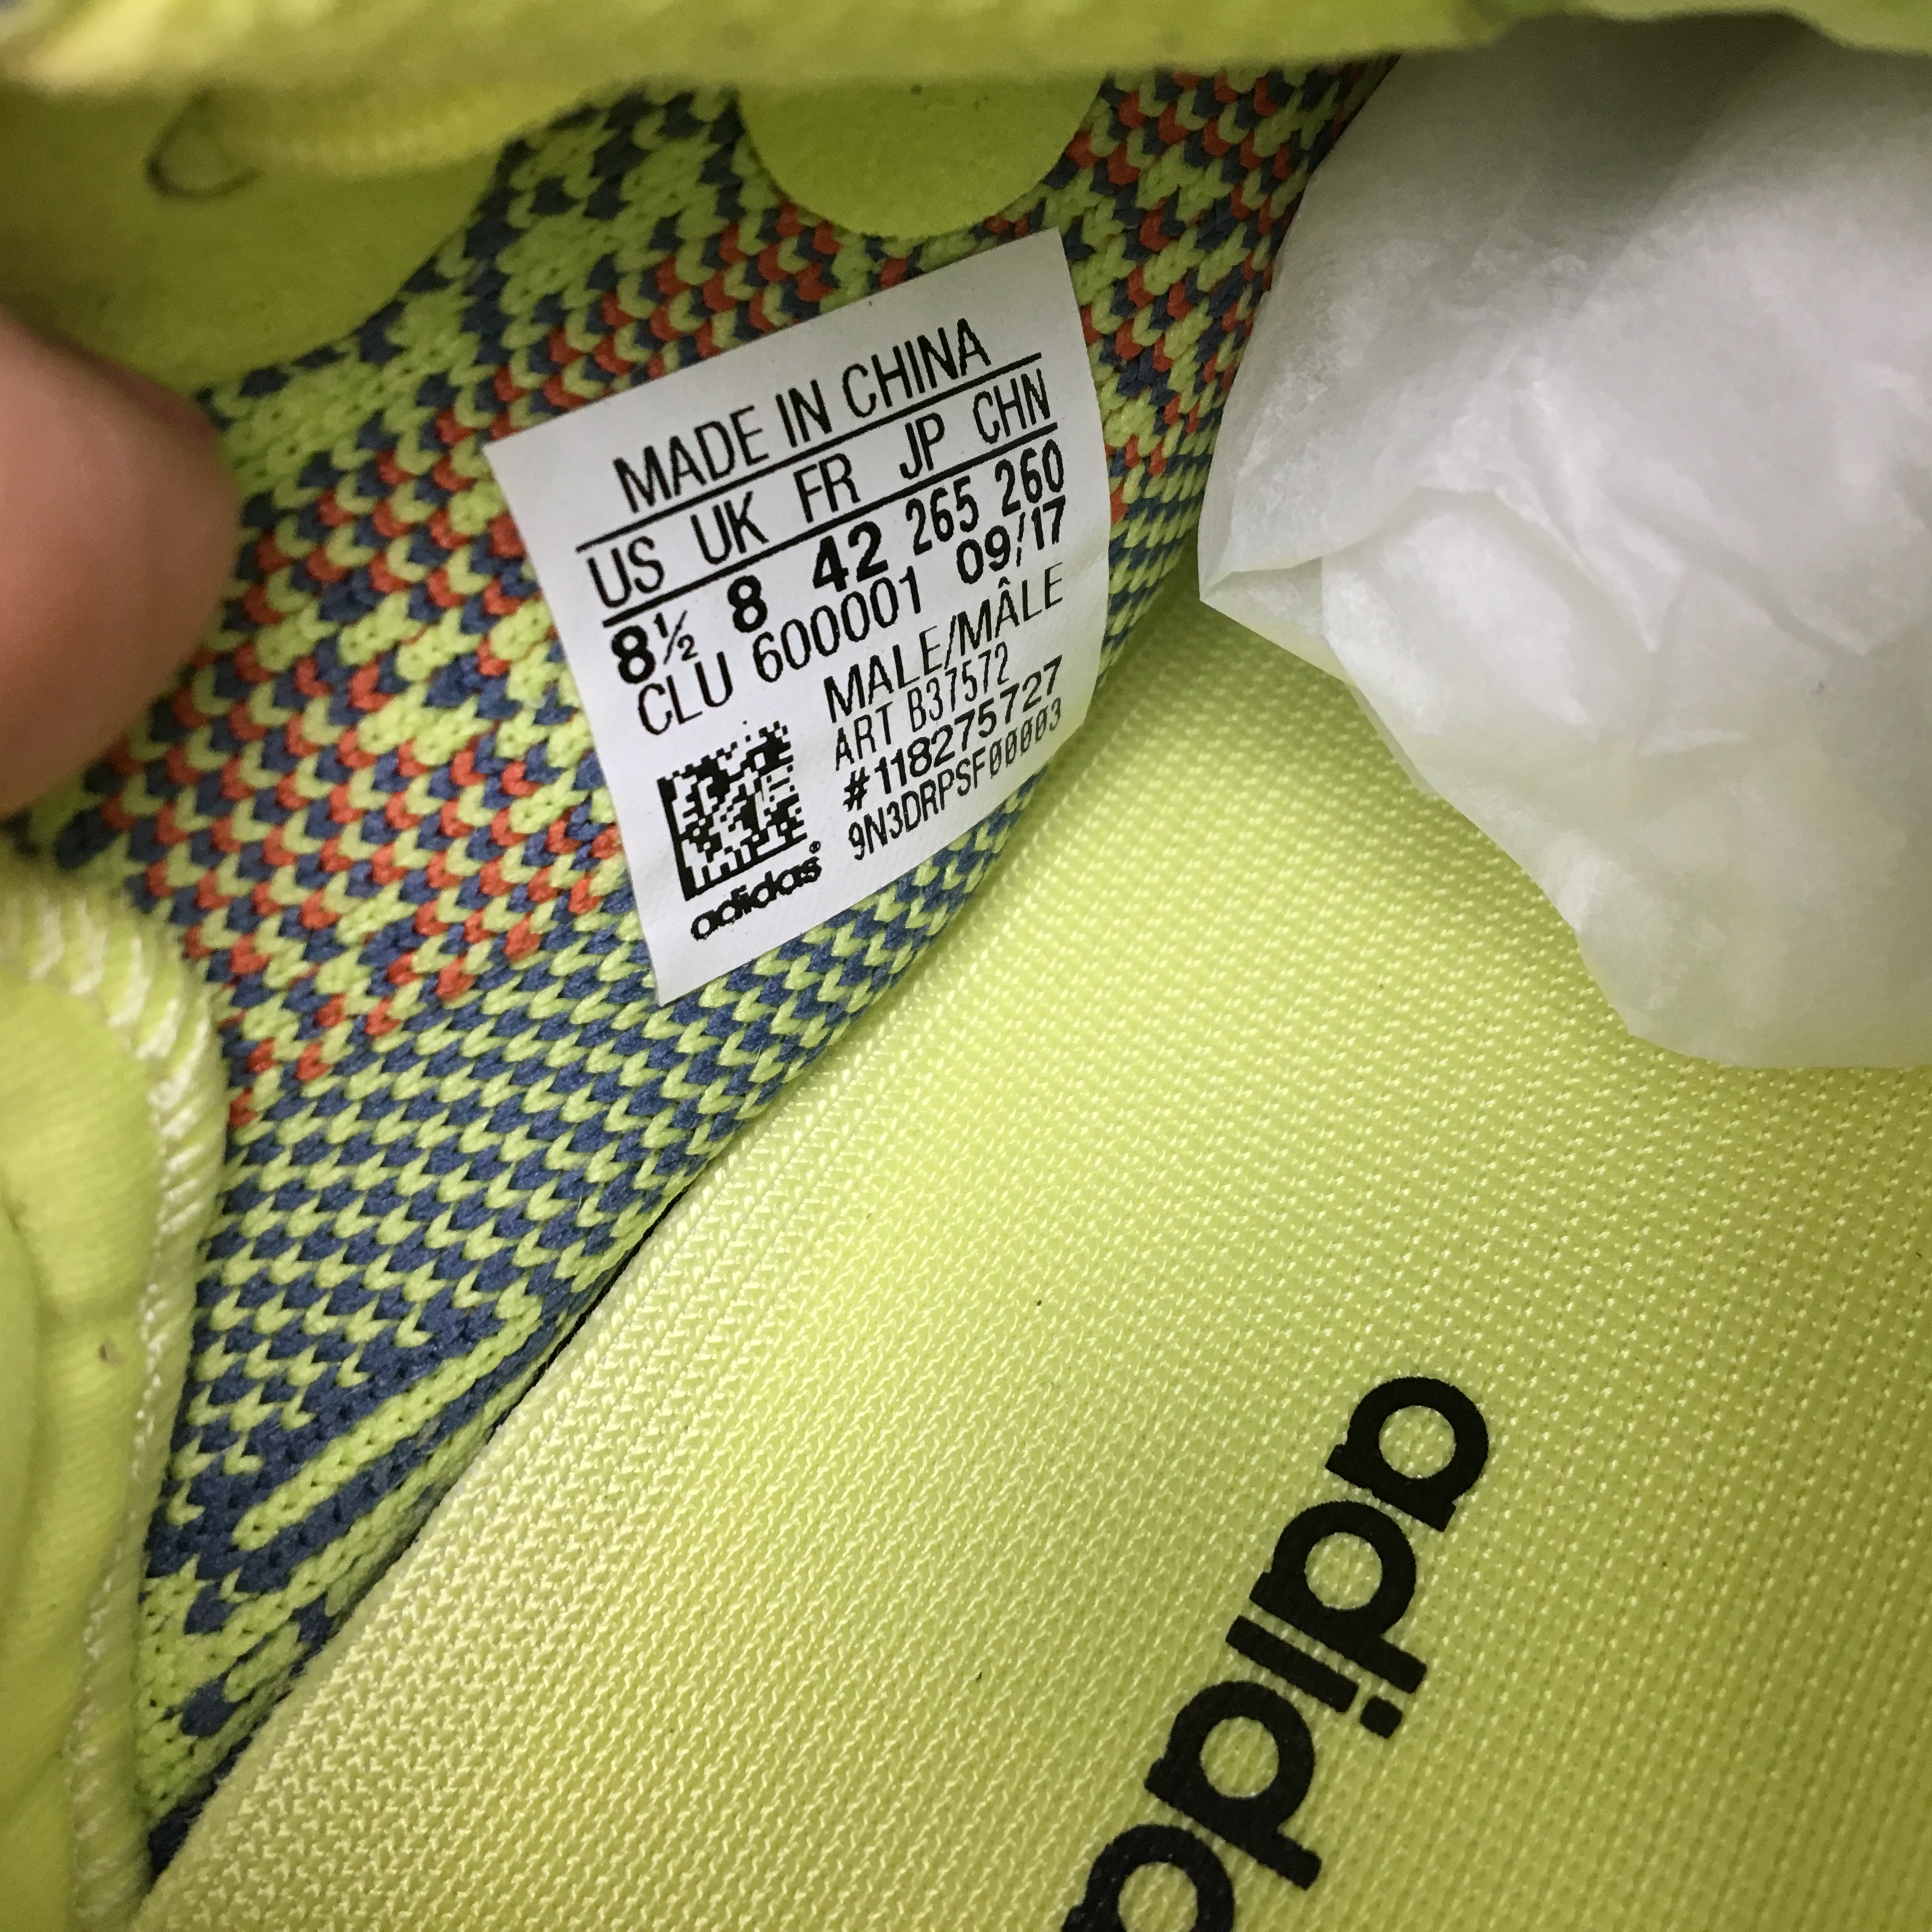 Adidas Originals Yeezy Boost 350 V2 Yebra B37572 14 - kickbulk.co